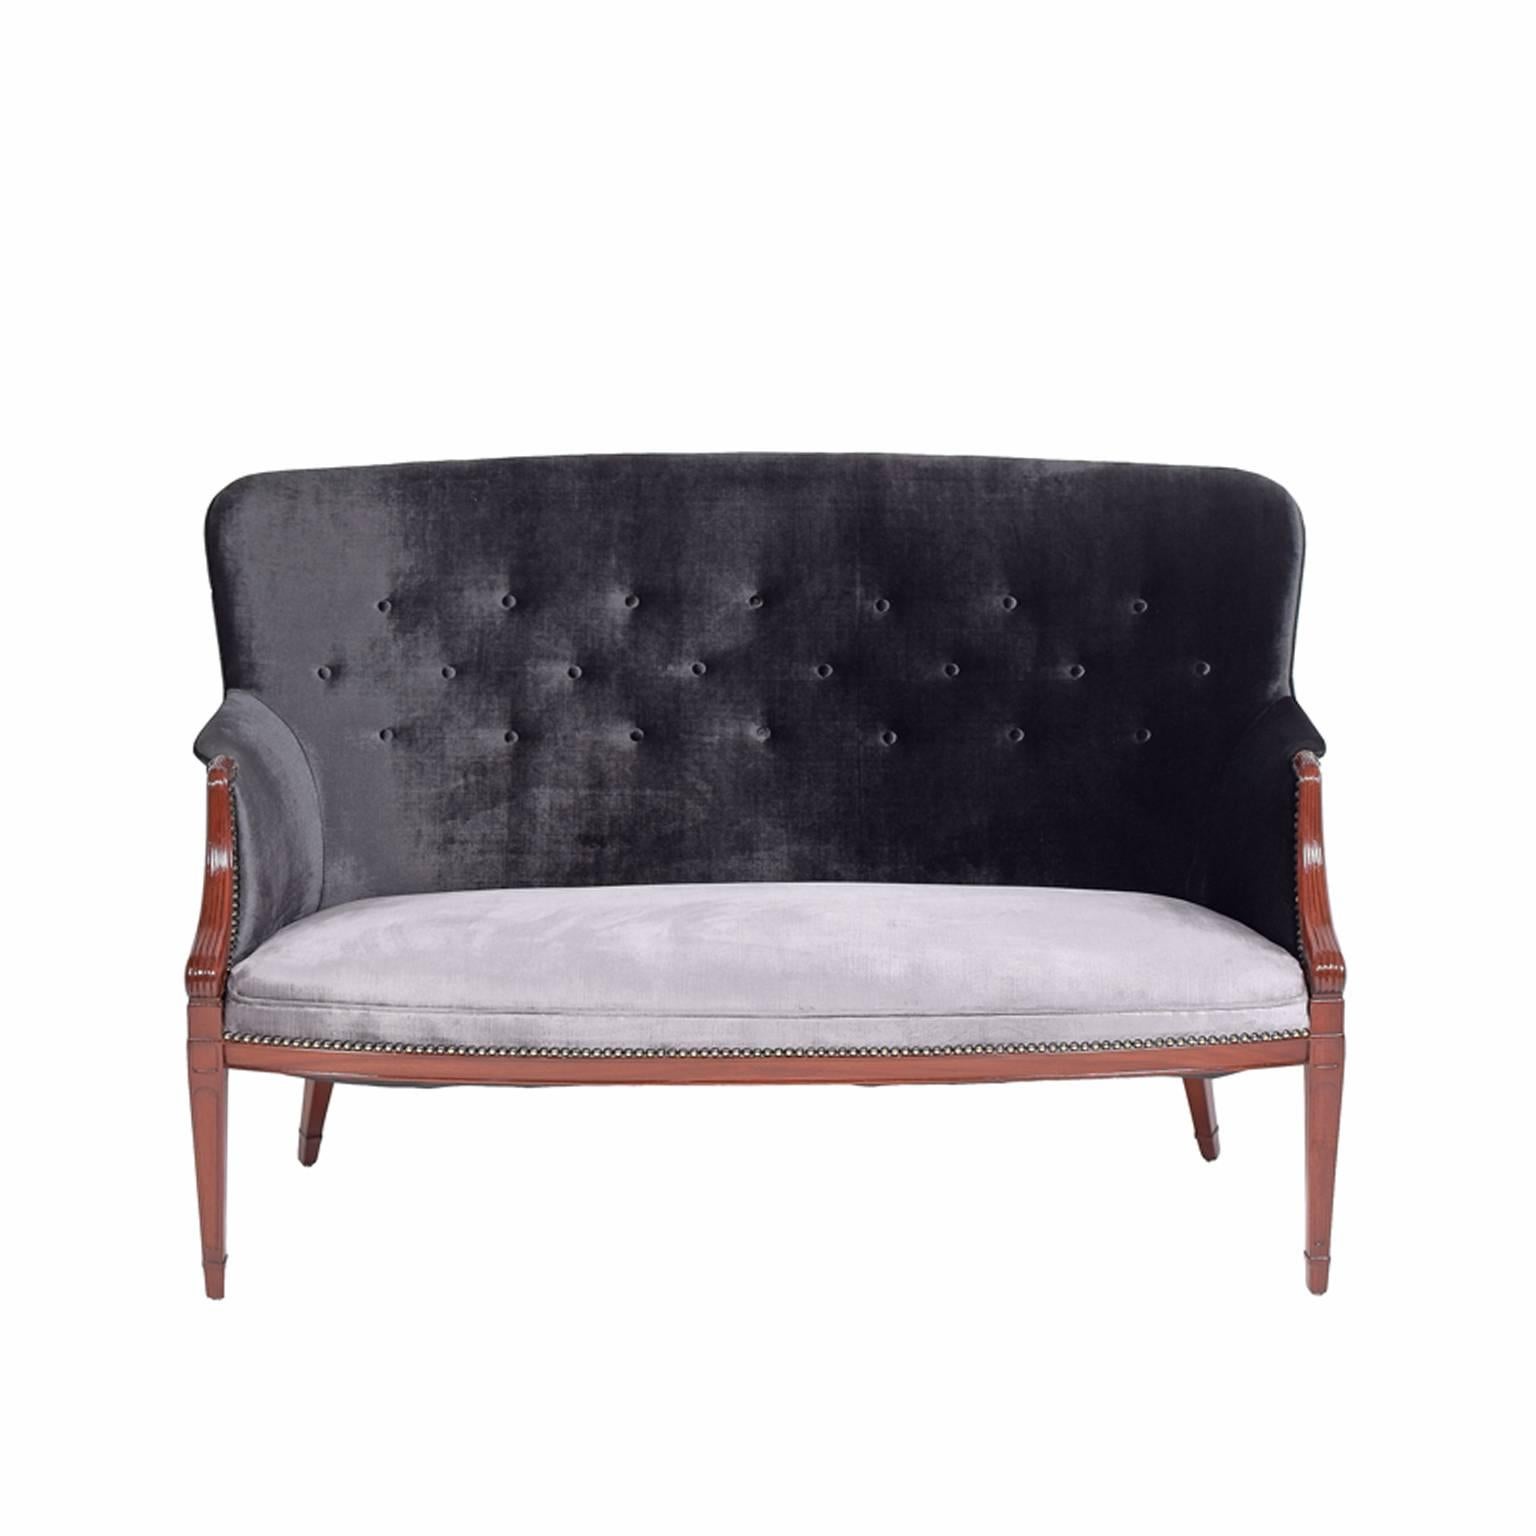 Canapé deux places en acajou massif conçu et fabriqué par Frits Henningsen dans les années 1940. Revêtement en velours bicolore avec dessus noir et assise argentée.